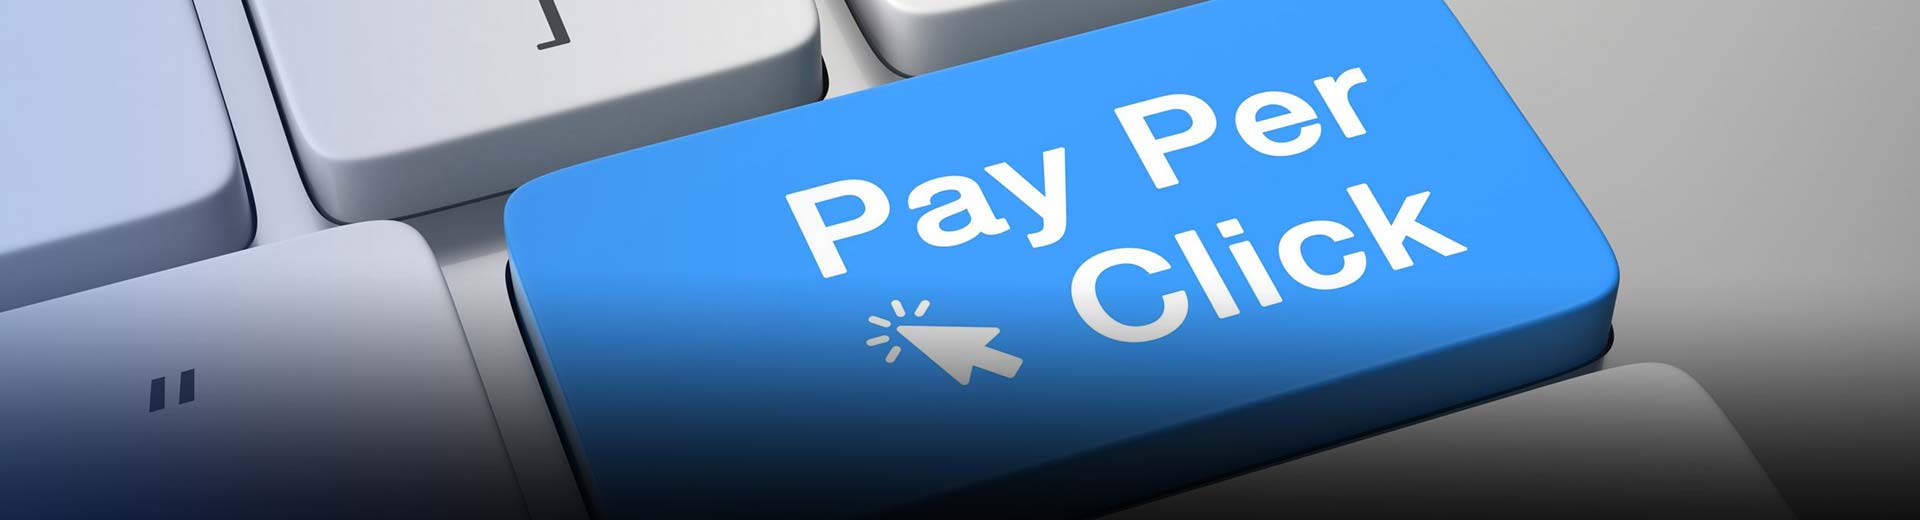 Promouvoir les programmes d'affiliation Pay Per Click